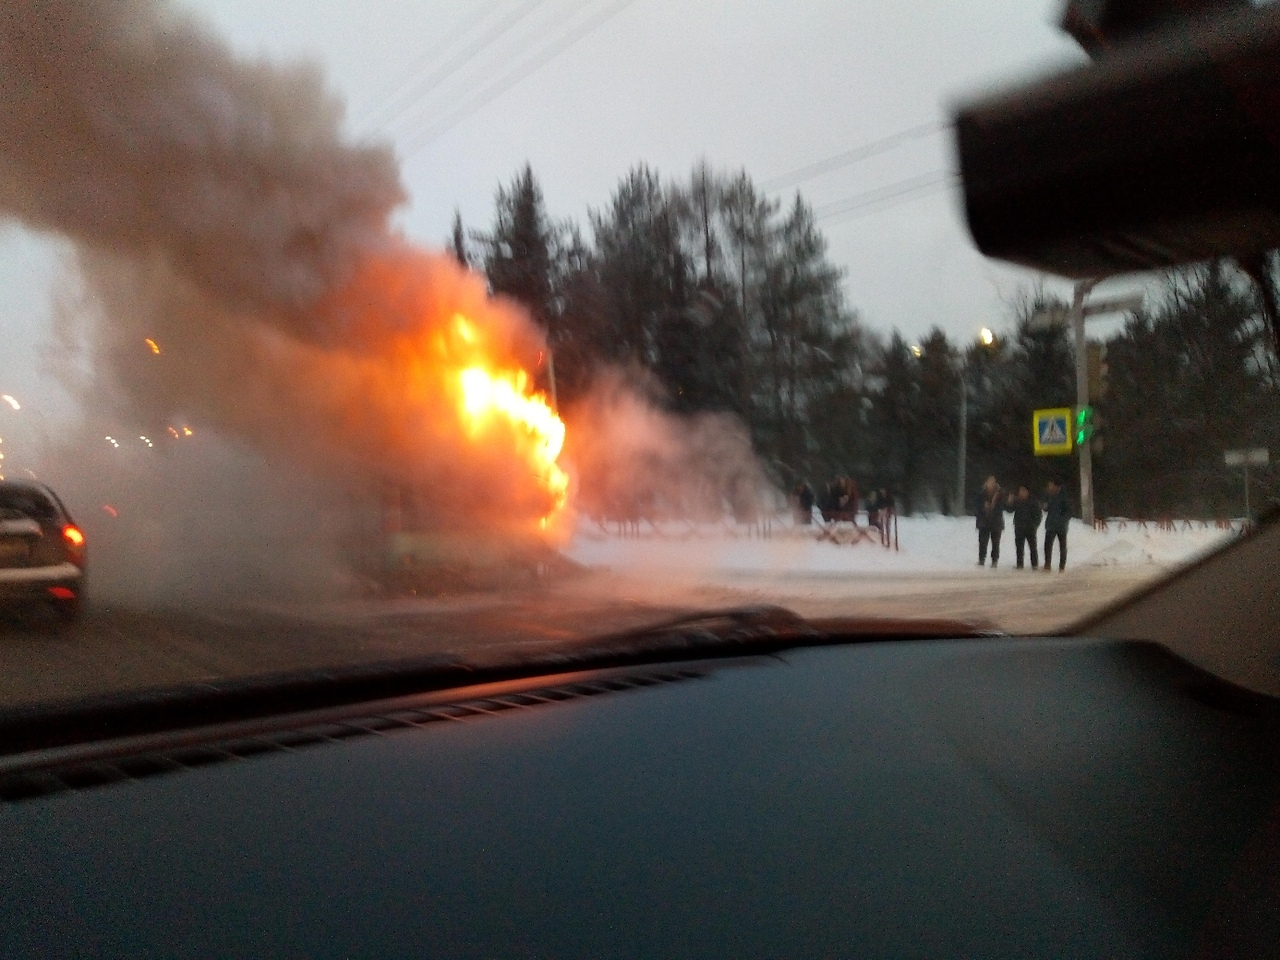 Провода рвались от огня: видео пожара в автобусе на Московском проспекте